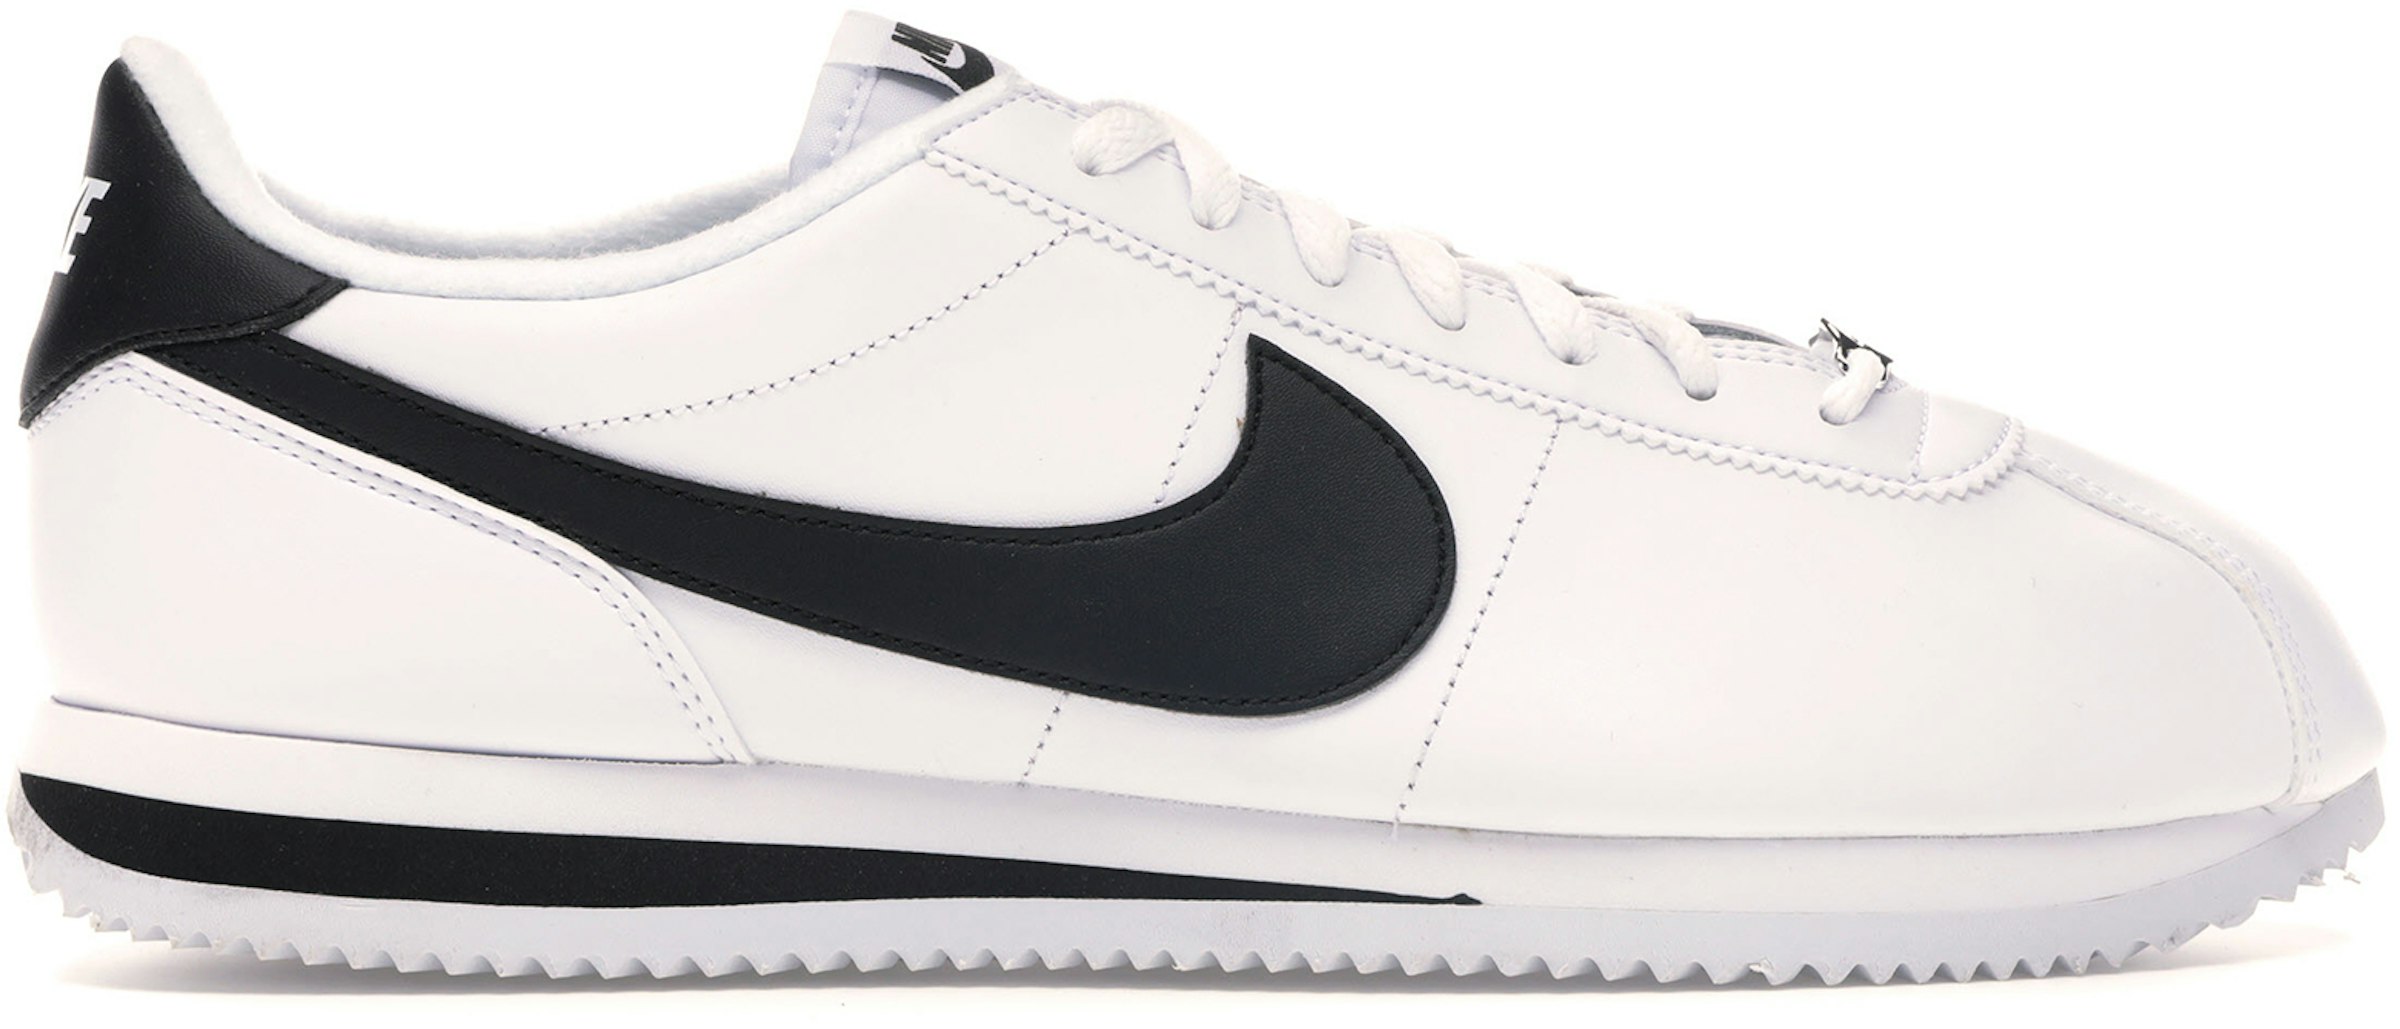 Nike Cortez Basic Leather White Black Men's 819719-100 - US